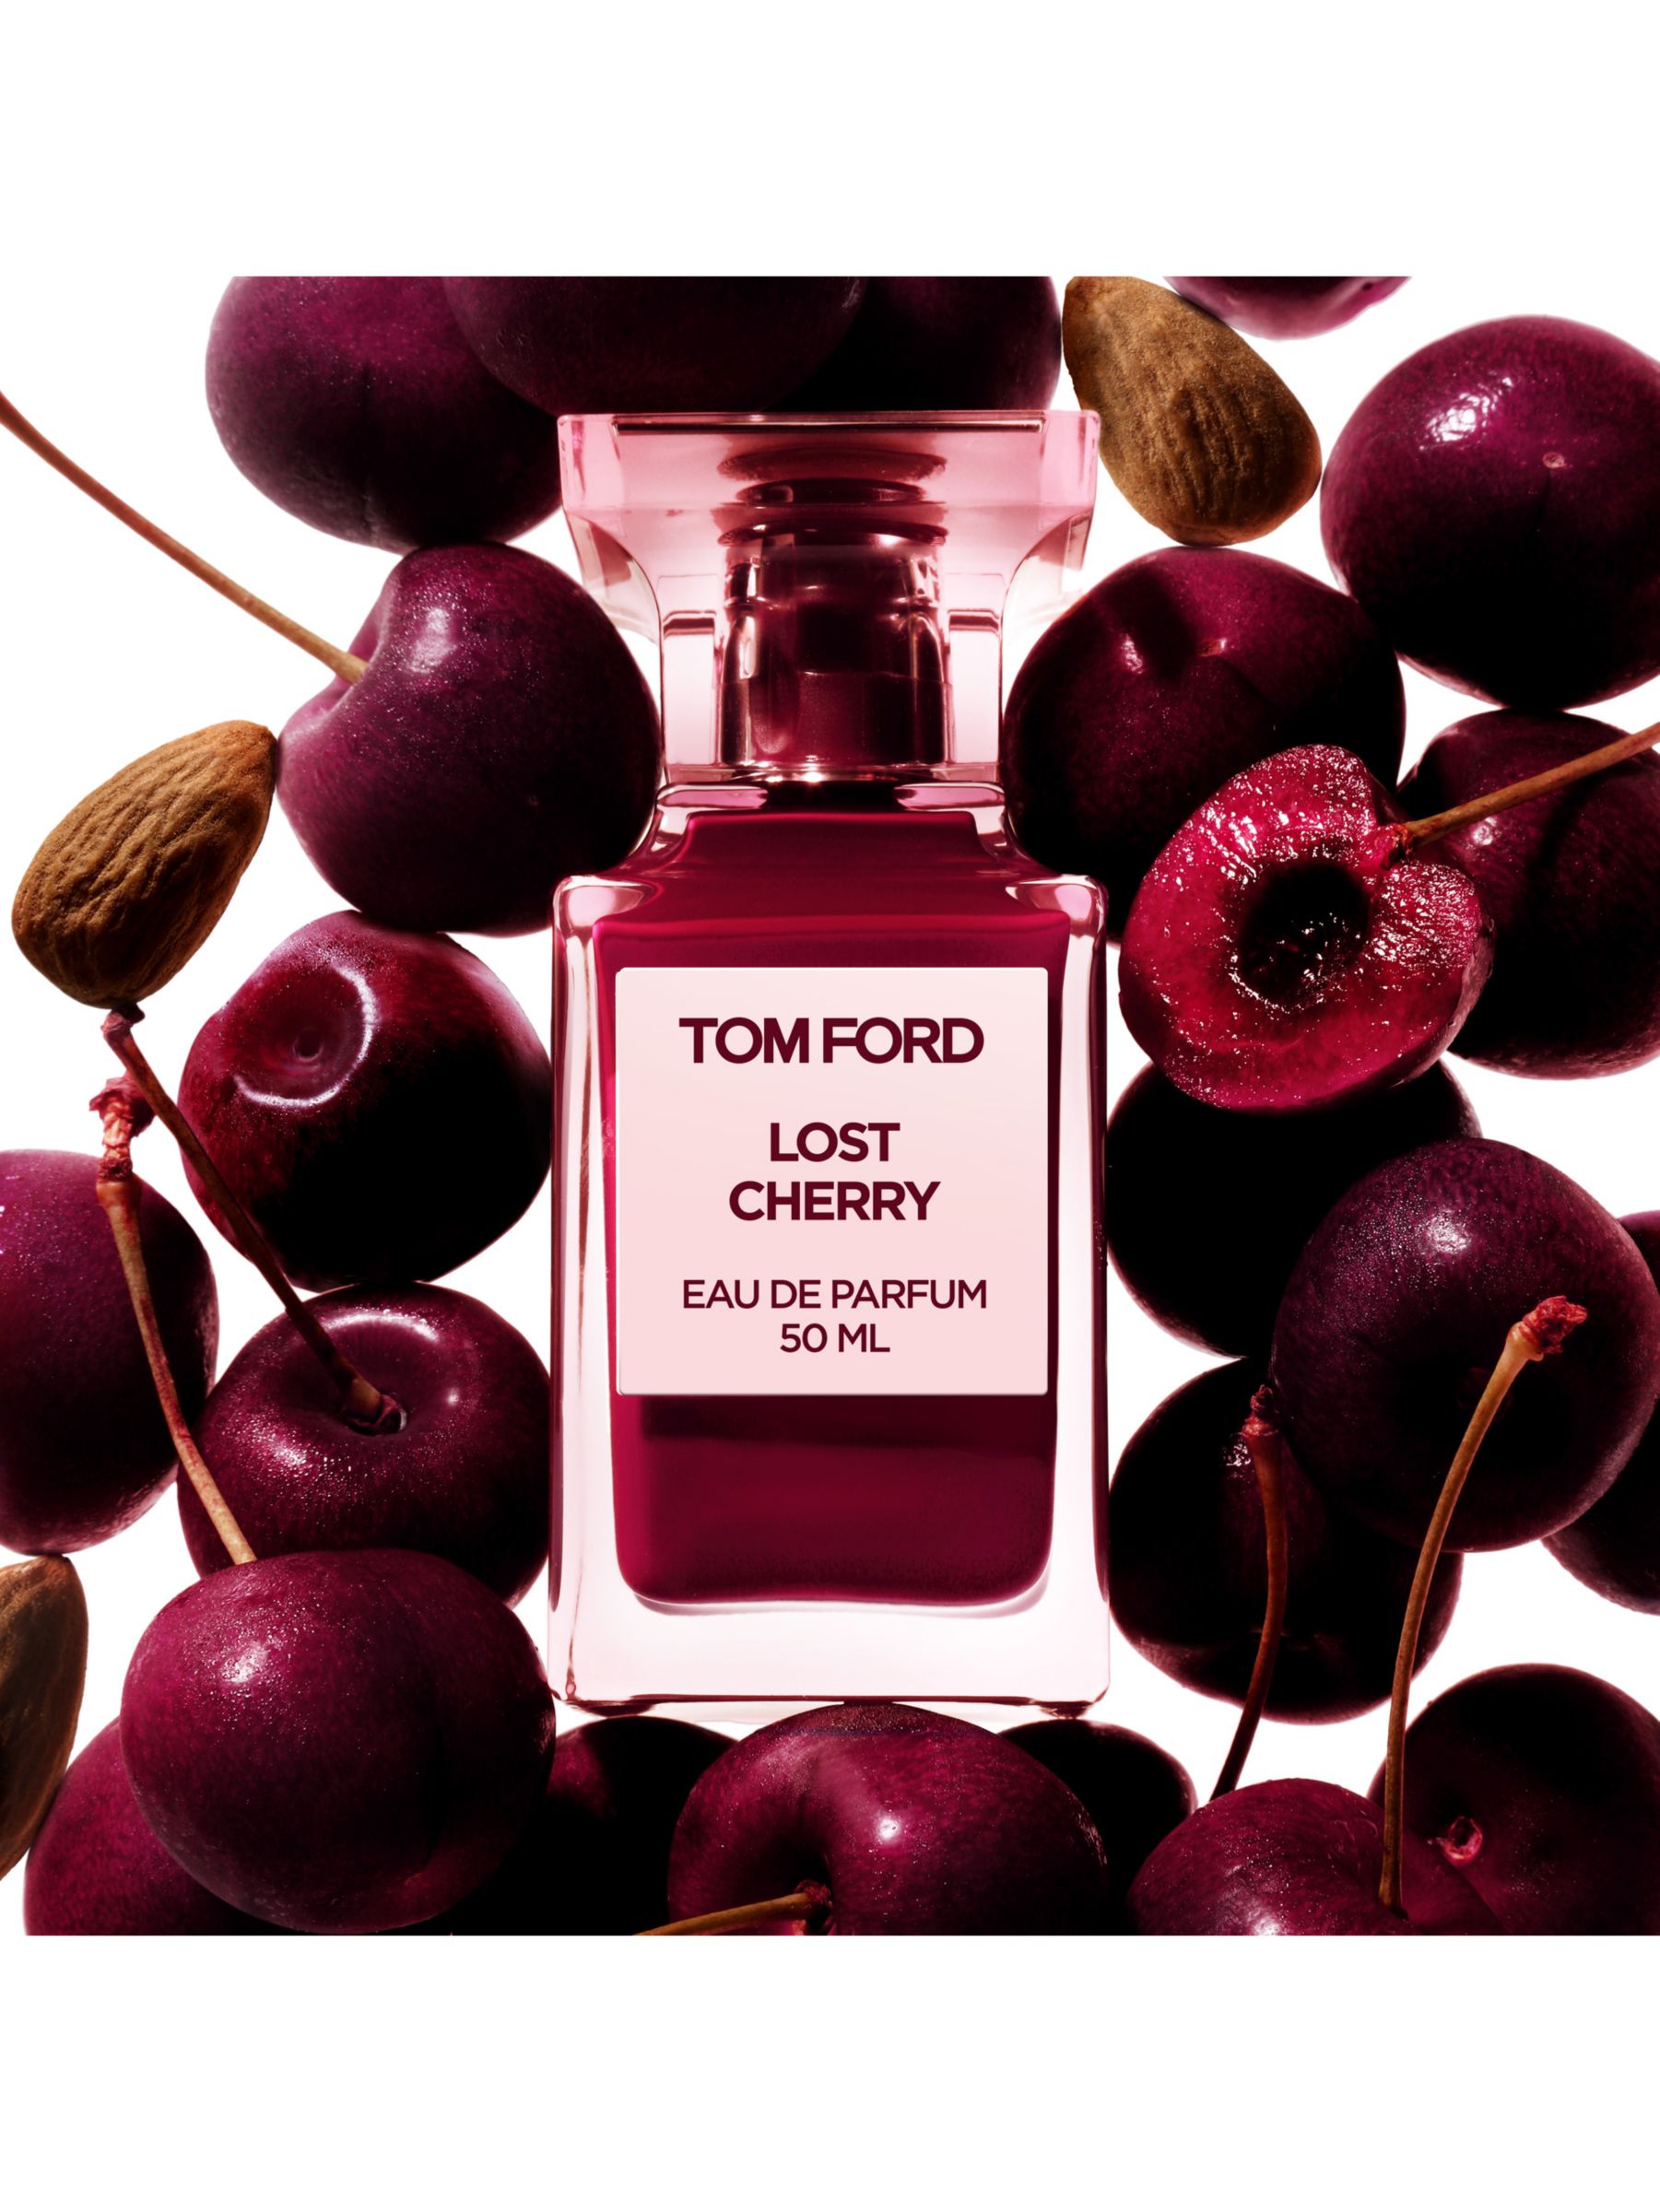 TOM FORD Private Blend Lost Cherry Eau de Parfum at John Lewis & Partners